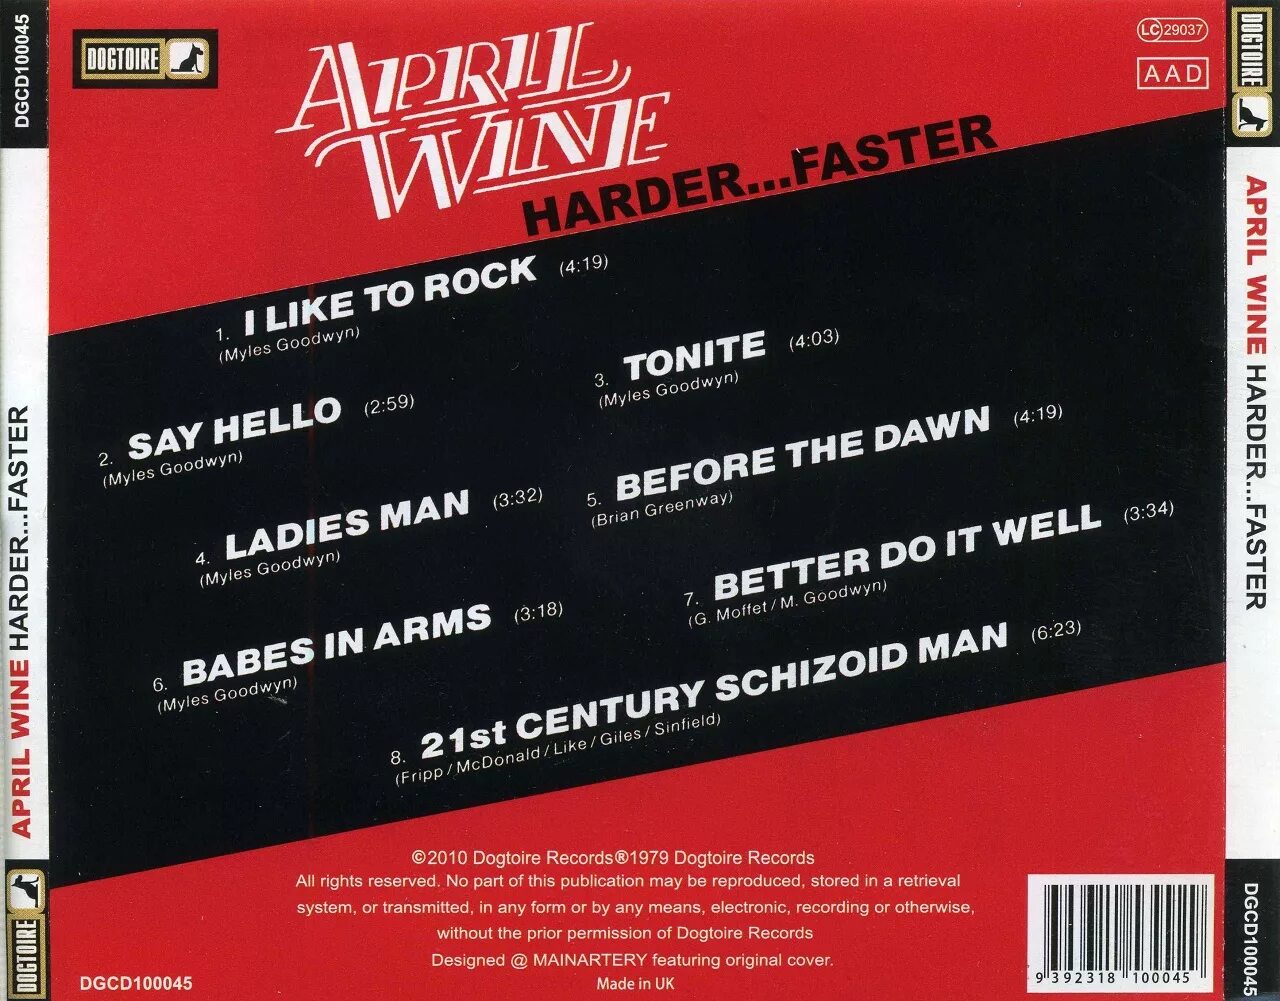 April Wine "harder... Faster". April Wine CD. April Wine harder faster 1979. April Wine 1971 April Wine. Faster and harder текст